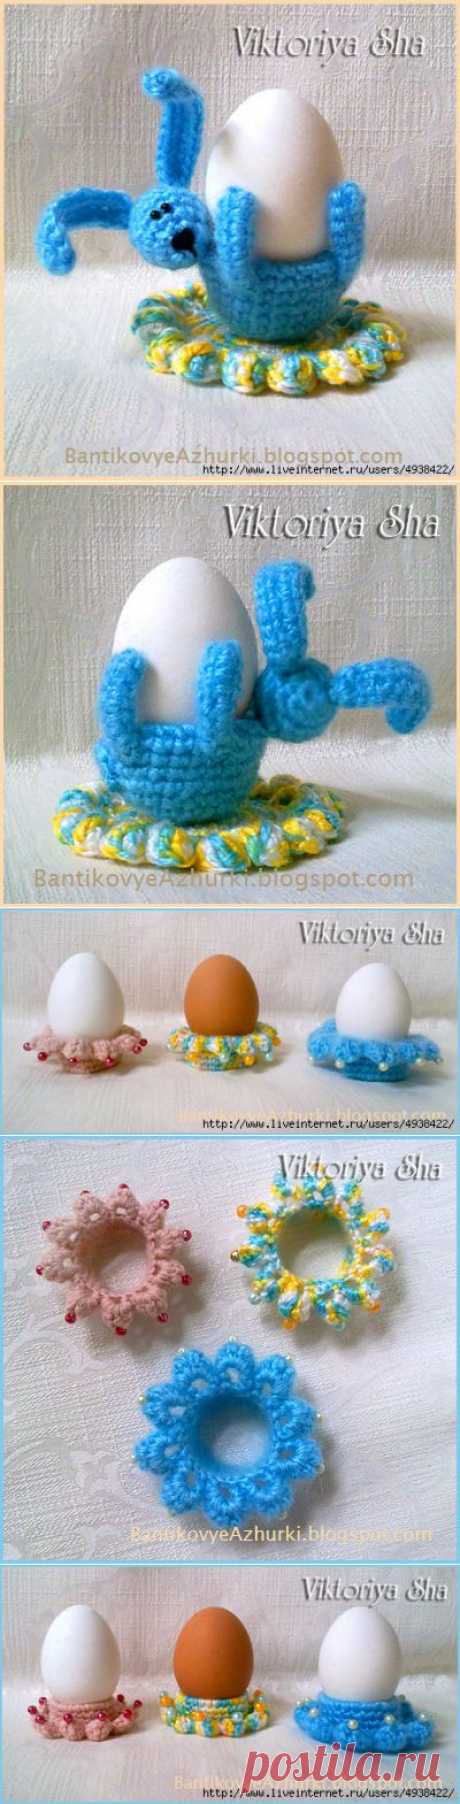 Пасхальный Кролик (подставка под яйцо своими руками) + Подставка для пасхального яйца своими руками (мастер-класс).